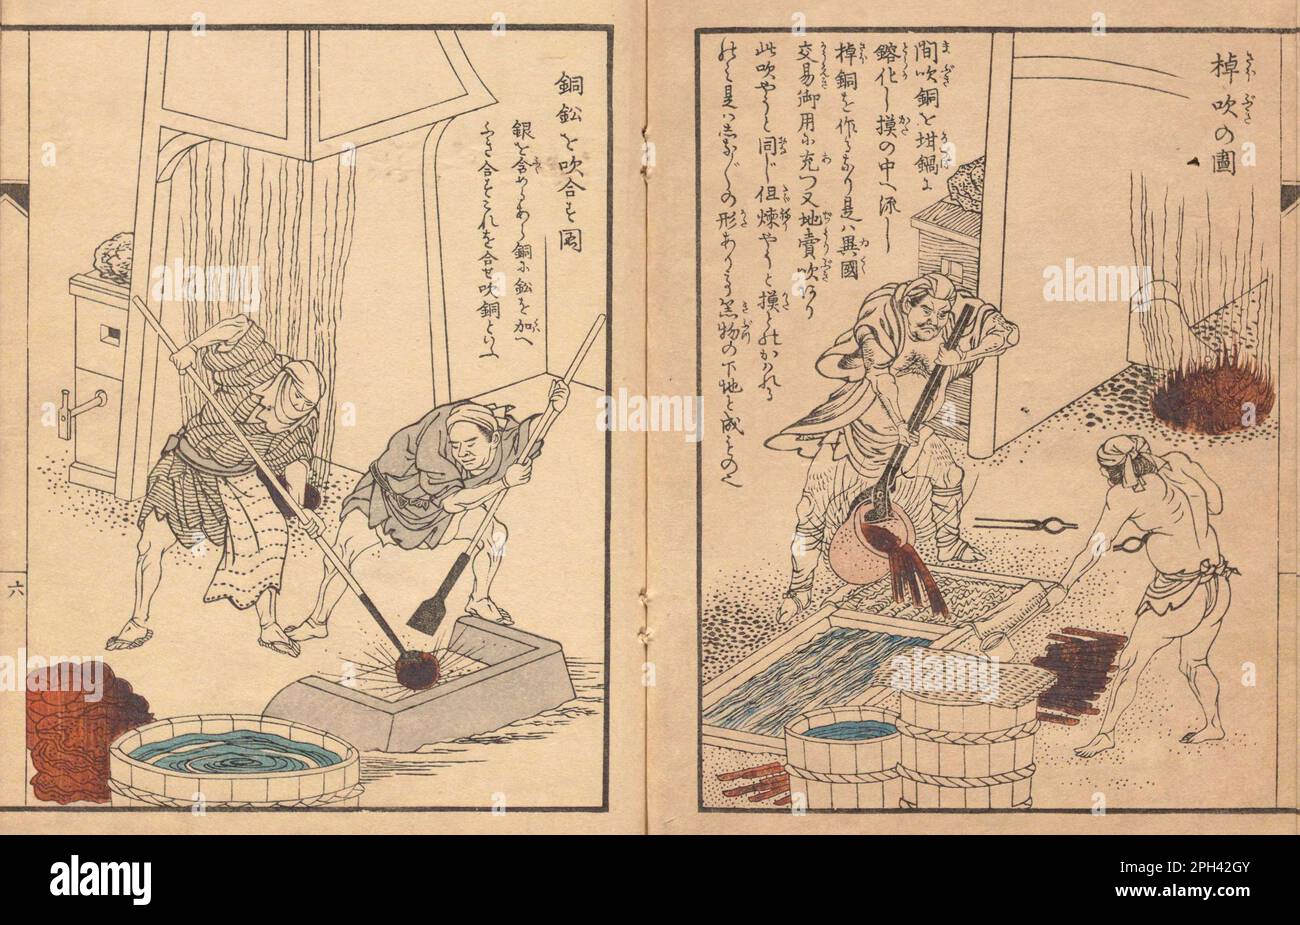 Illustrazioni da 'Kodouzuroku', redattore Masuda Kou (1769-1821) , artista Niwa Toukei (1760-1822), fondato nel 1811-1816. Mostra tecniche di raffinazione del rame. Saobuki destro (in lingotto di rame), Awasebuki sinistro (in rame e lega di piombo per adsorbire l'argento sul piombo) Foto Stock